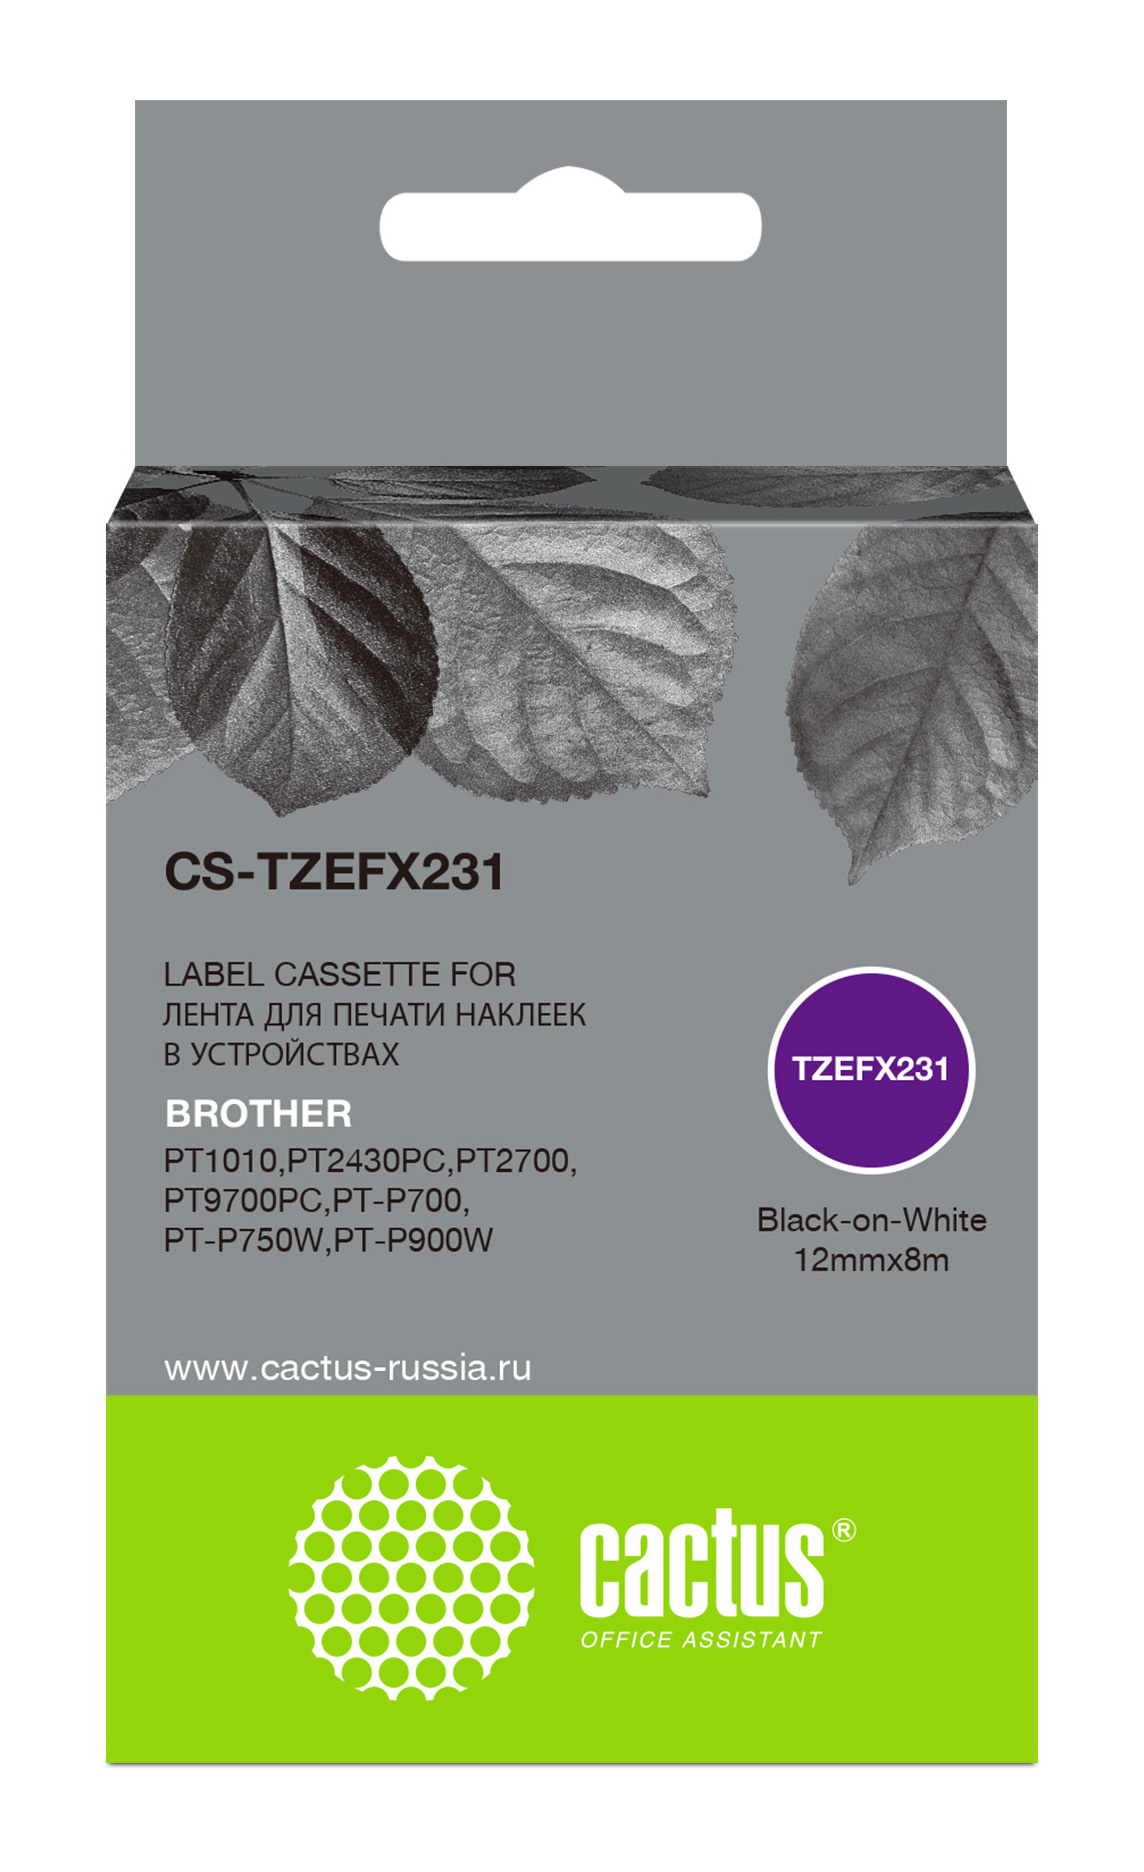   E2E4 Кассета с наклейками Cactus CS-TZEFX231, 1.2 см x 8 м, черный на белом, совместимая